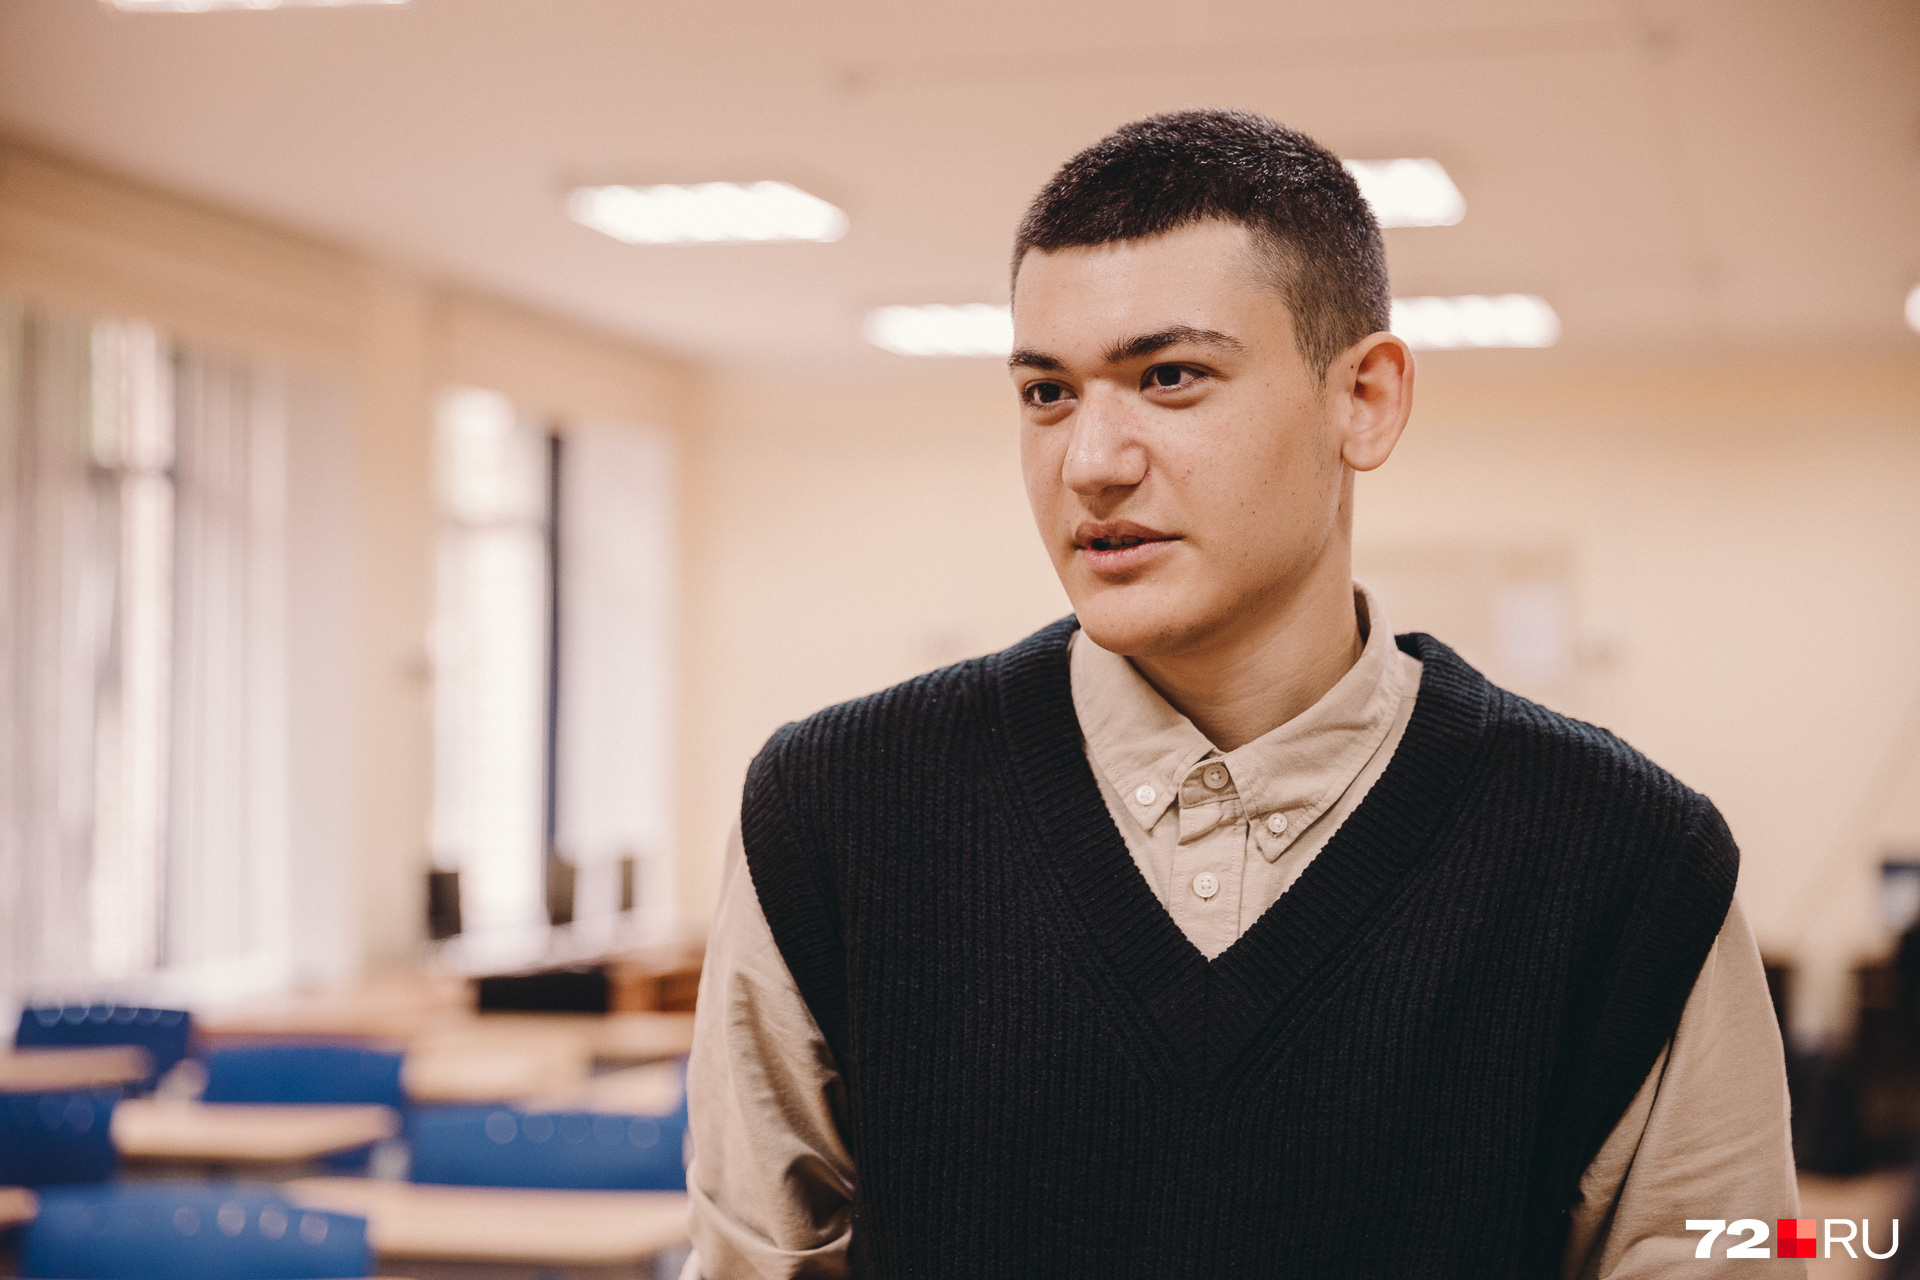 Давид Багиев, одиннадцатиклассник. Планирует стать IT-специалистом